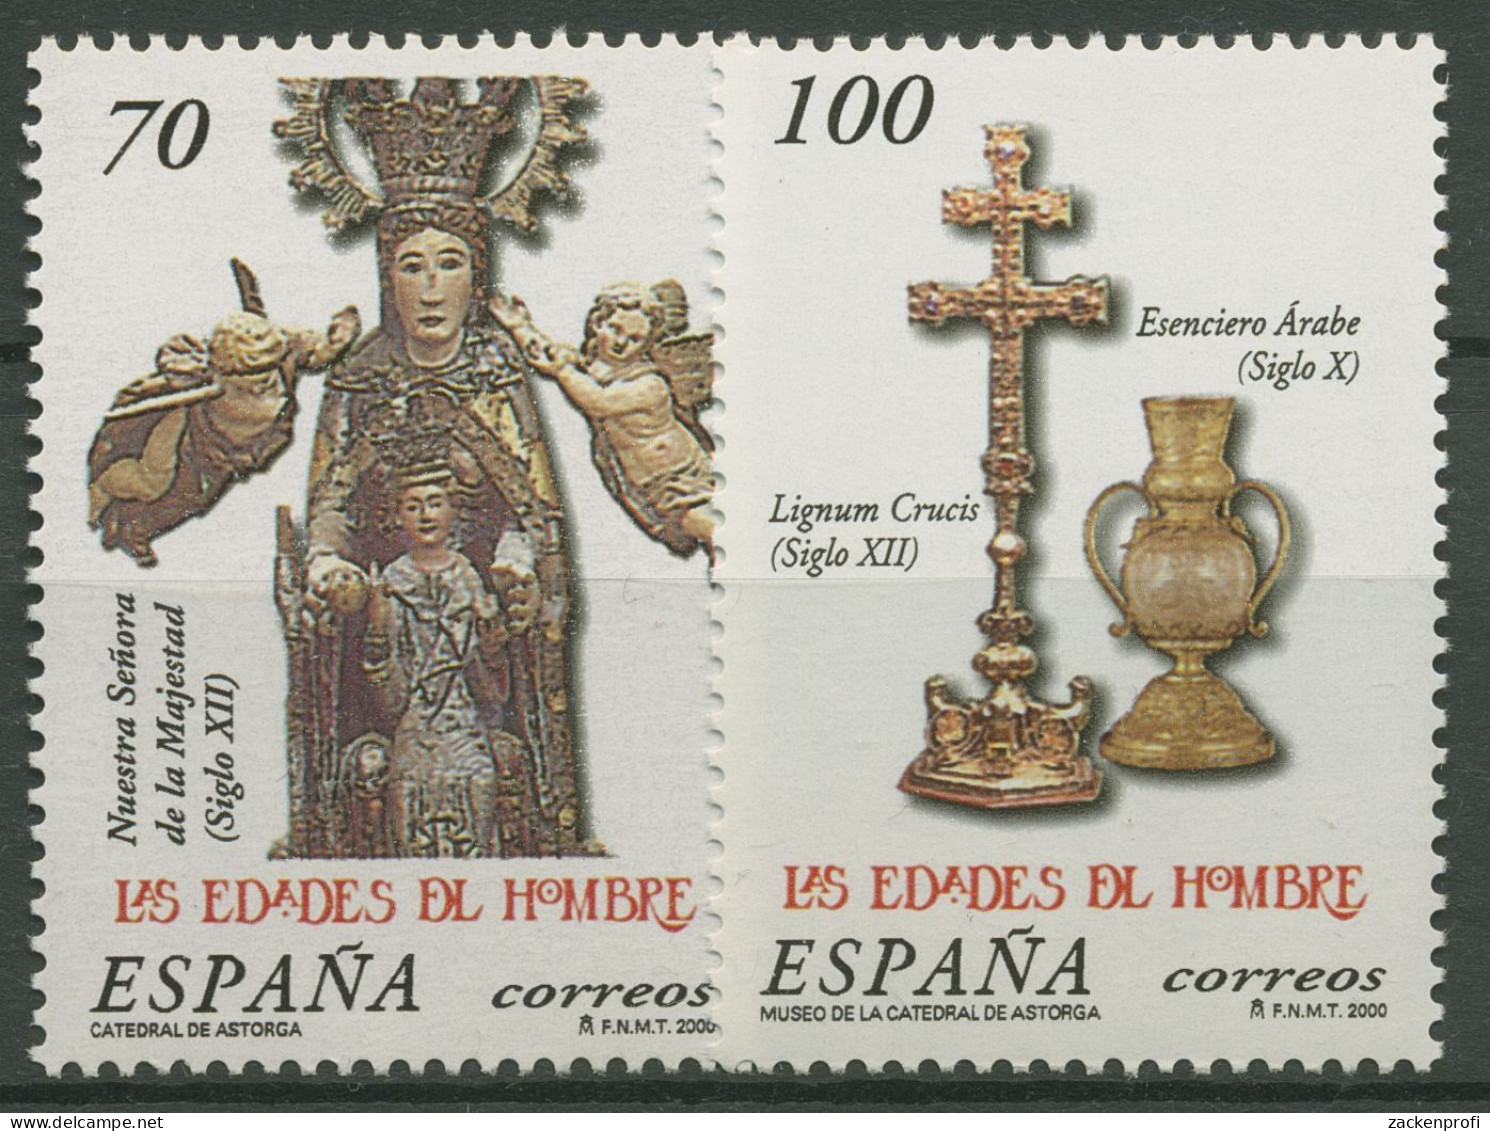 Spanien 2000 Ausstellung Zeitalter Des Menschen Statue 3533/34 Postfrisch - Neufs